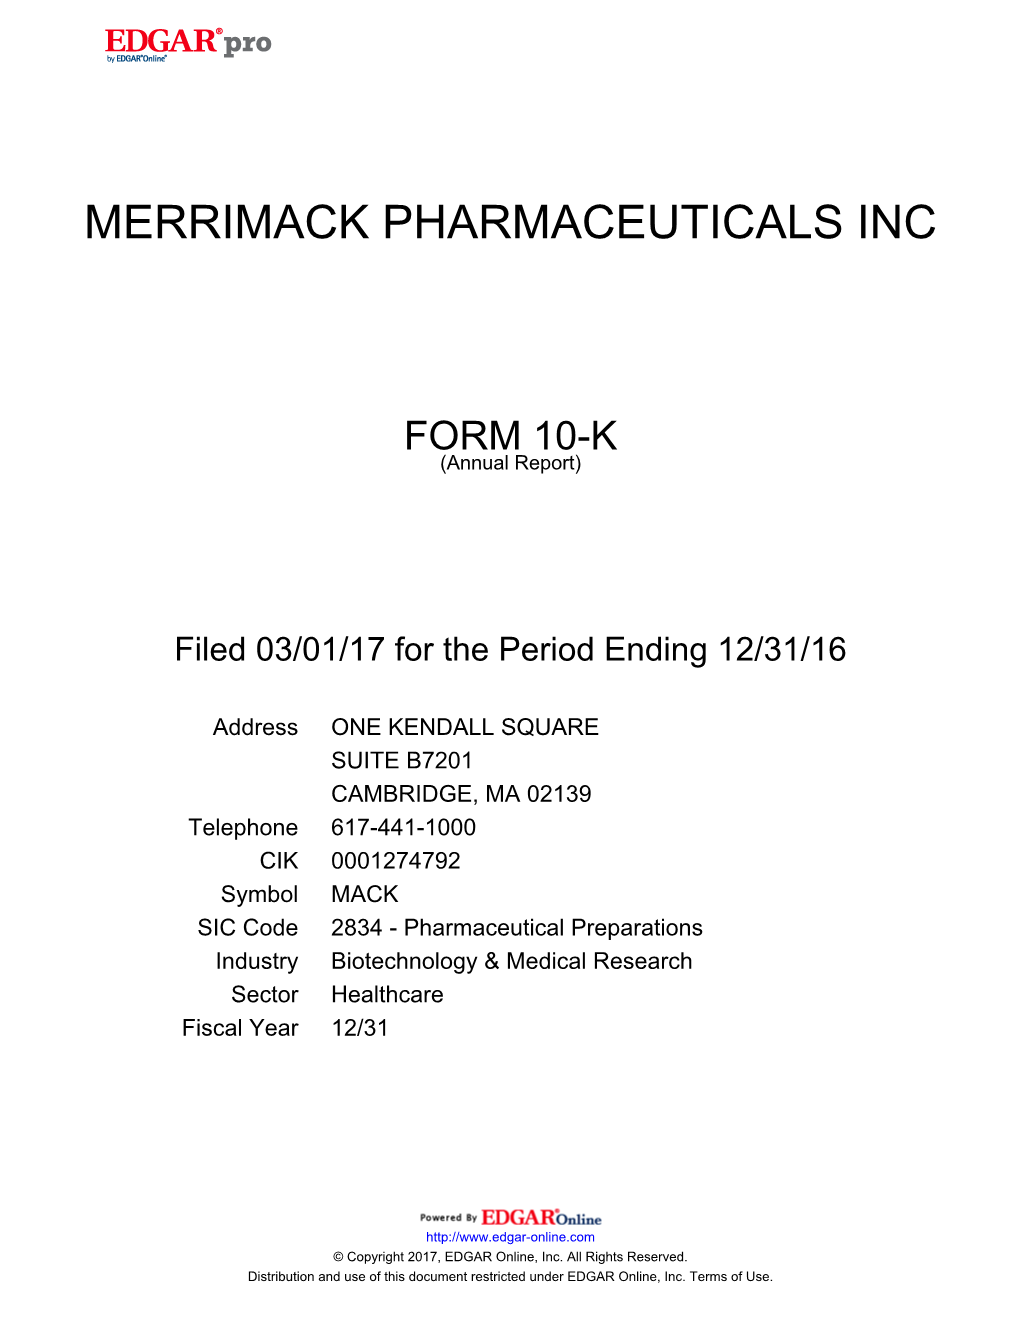 Merrimack Pharmaceuticals Inc